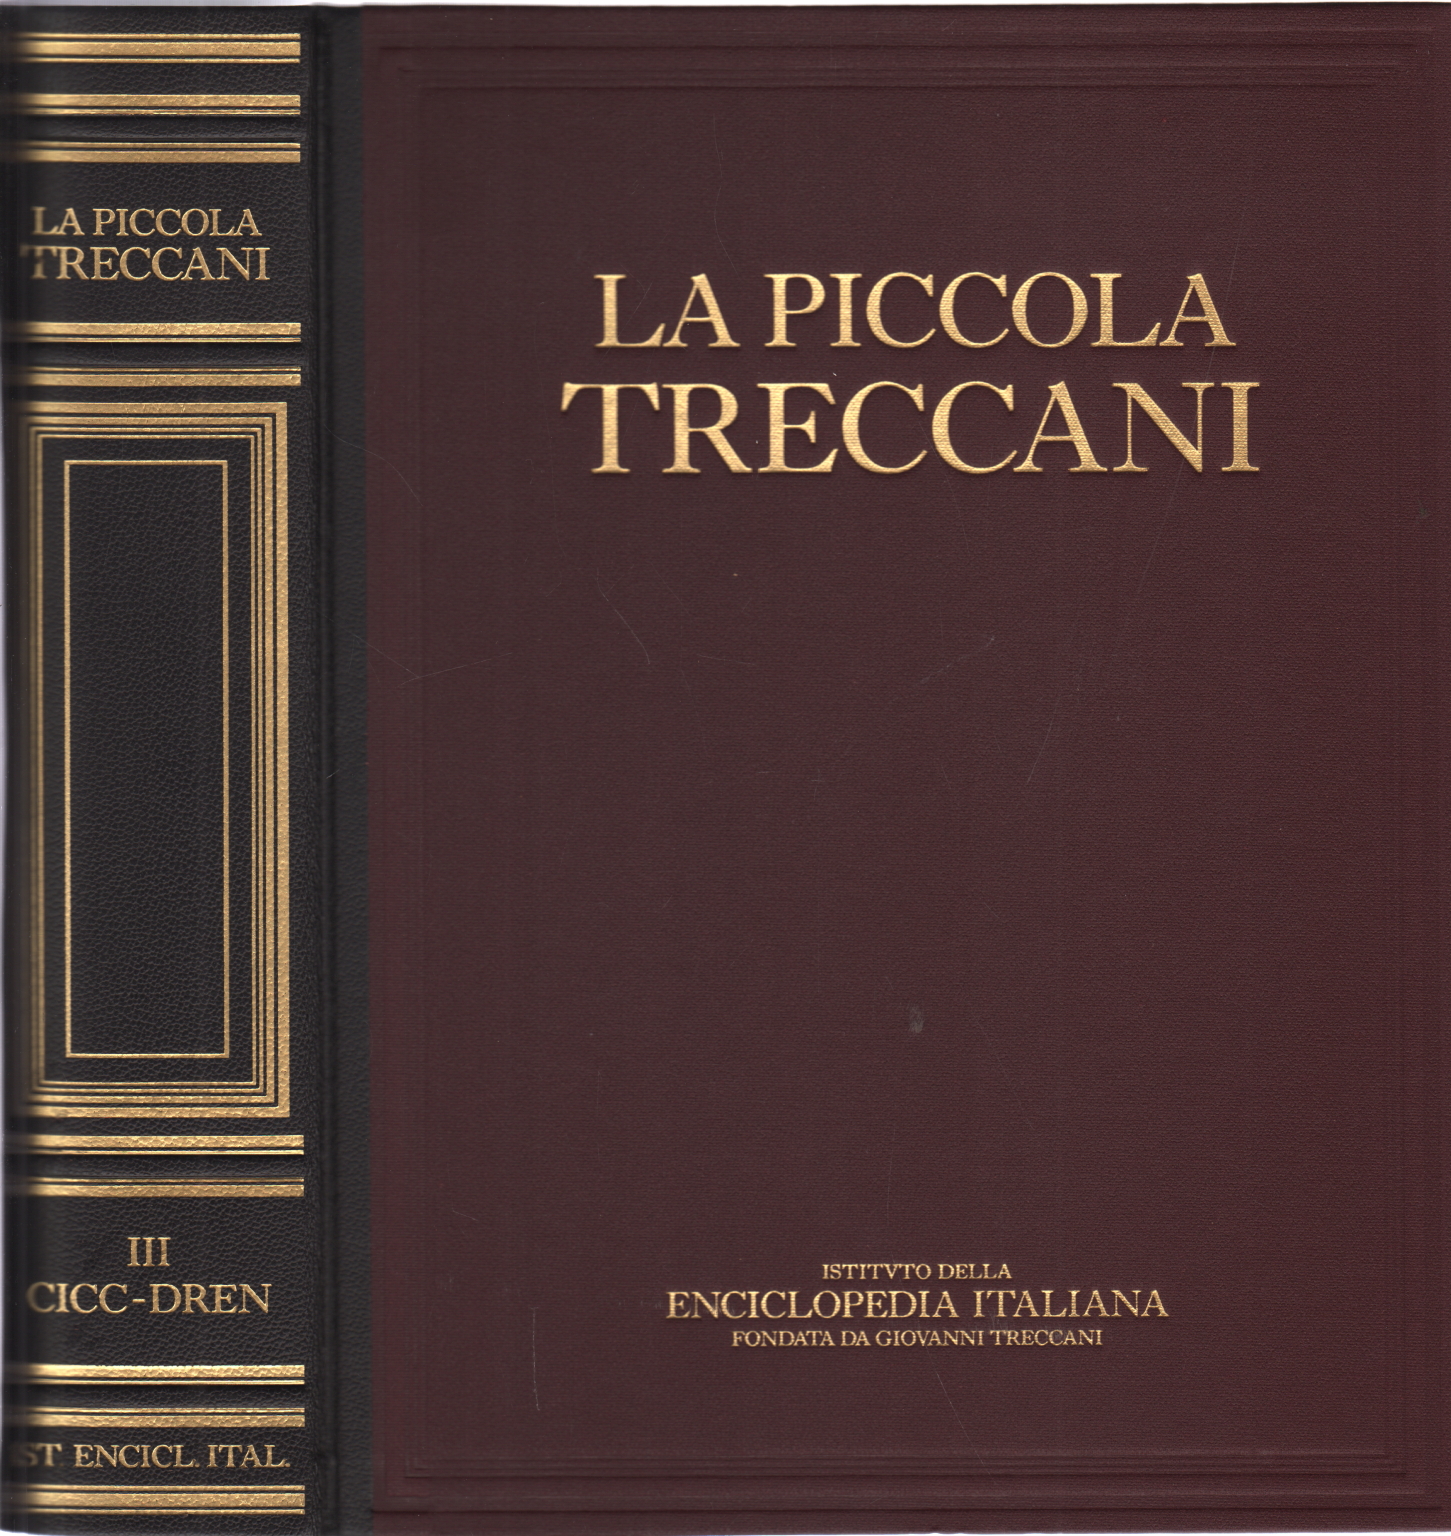 La Piccola Treccani III Cicc-Dren, AA.VV.